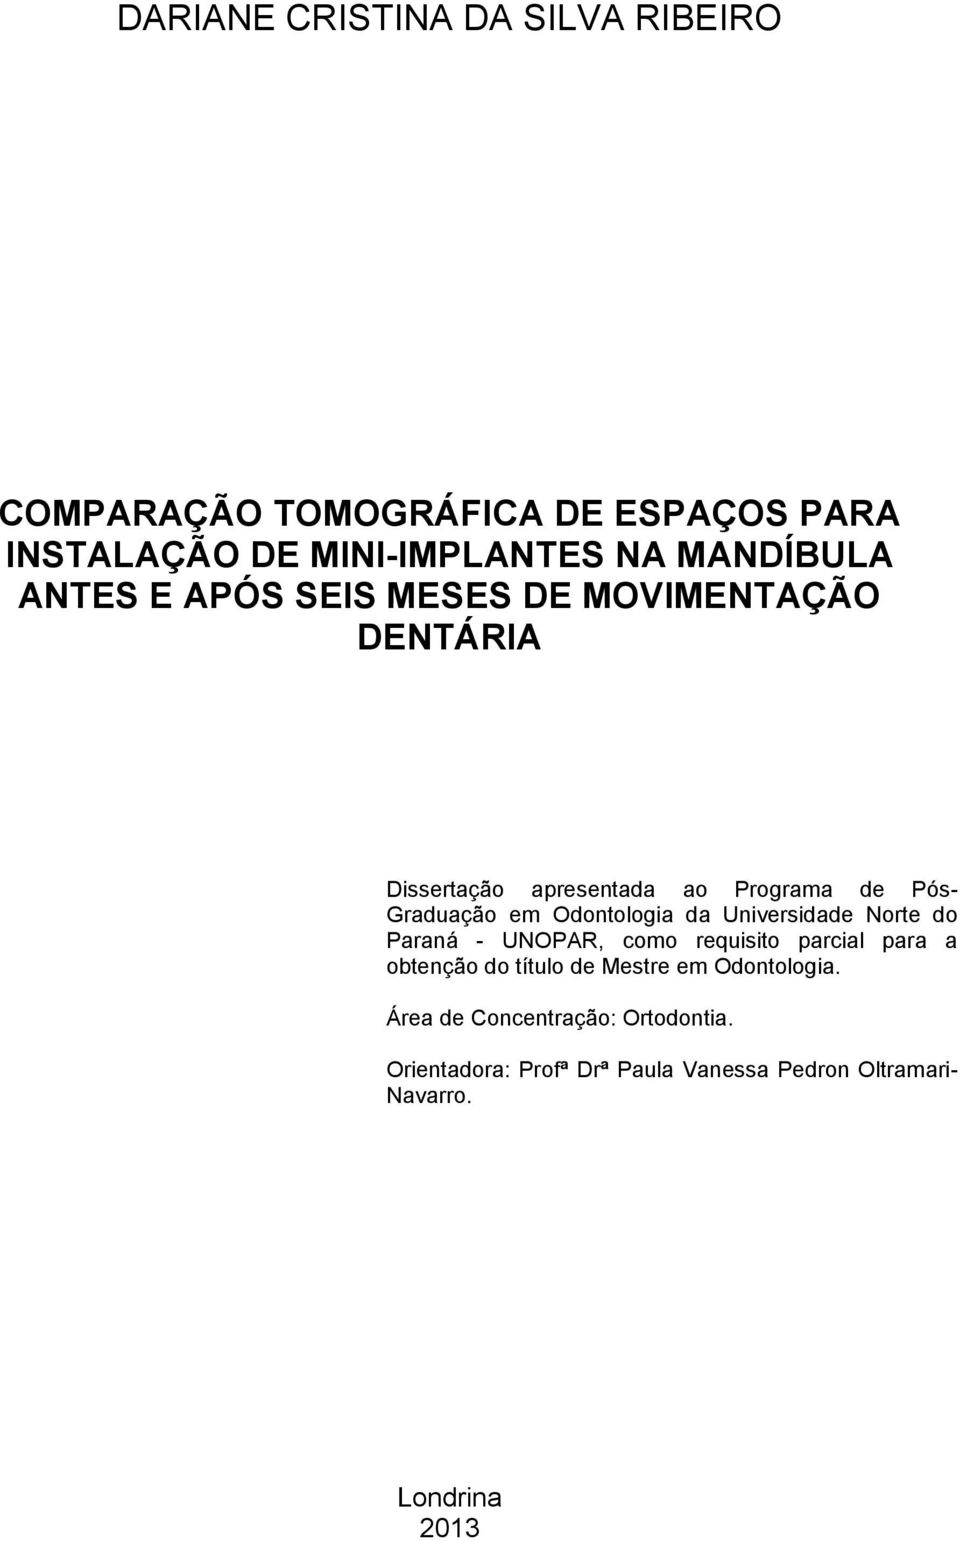 Odontologia da Universidade Norte do Paraná - UNOPAR, como requisito parcial para a obtenção do título de Mestre em